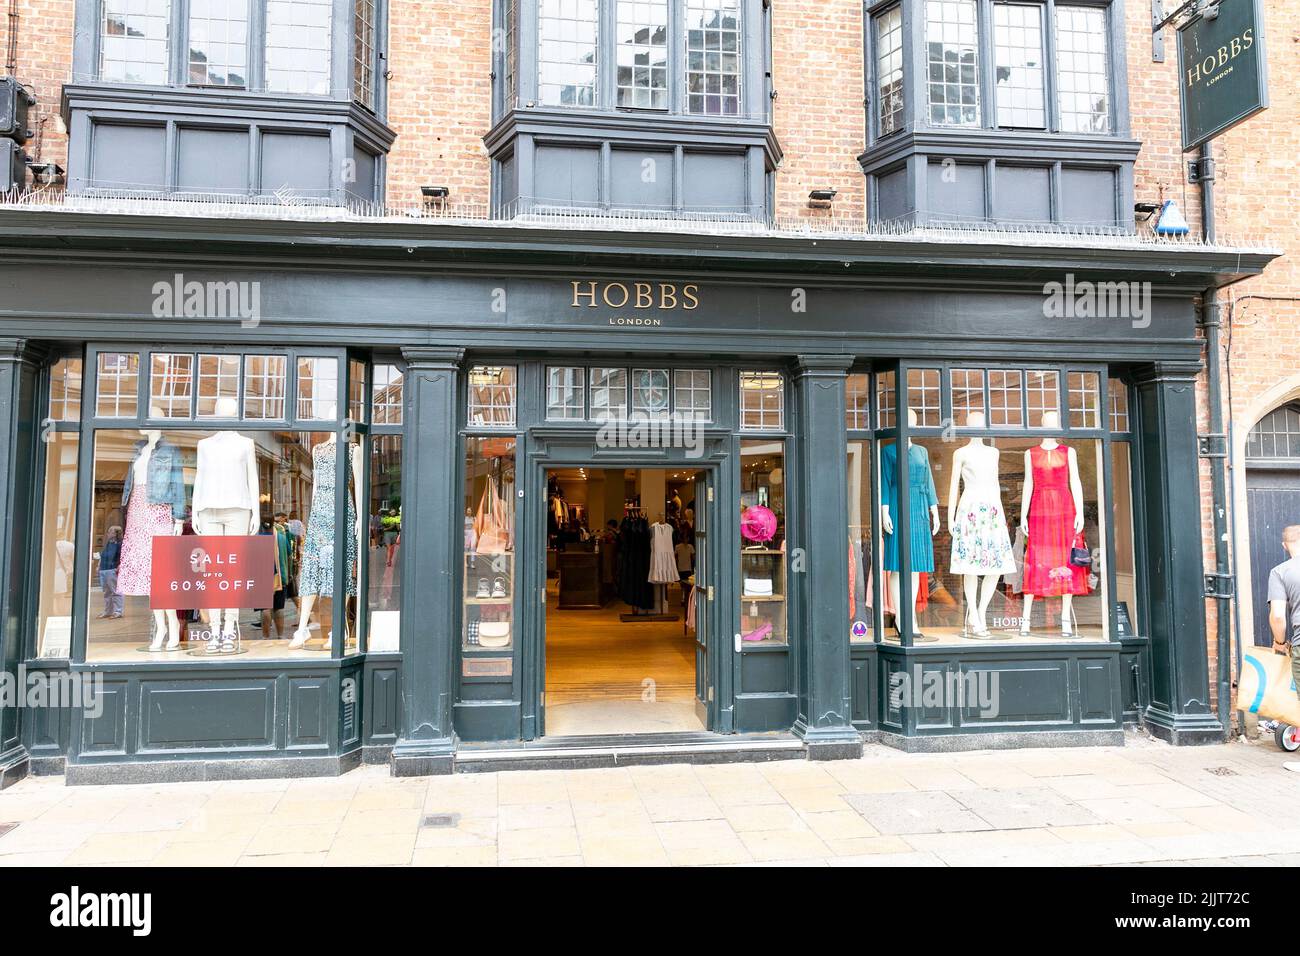 Negozio di abbigliamento Hobbs nel centro storico di York, all'esterno del negozio di abbigliamento, Yorkshire, Inghilterra, Regno Unito Foto Stock